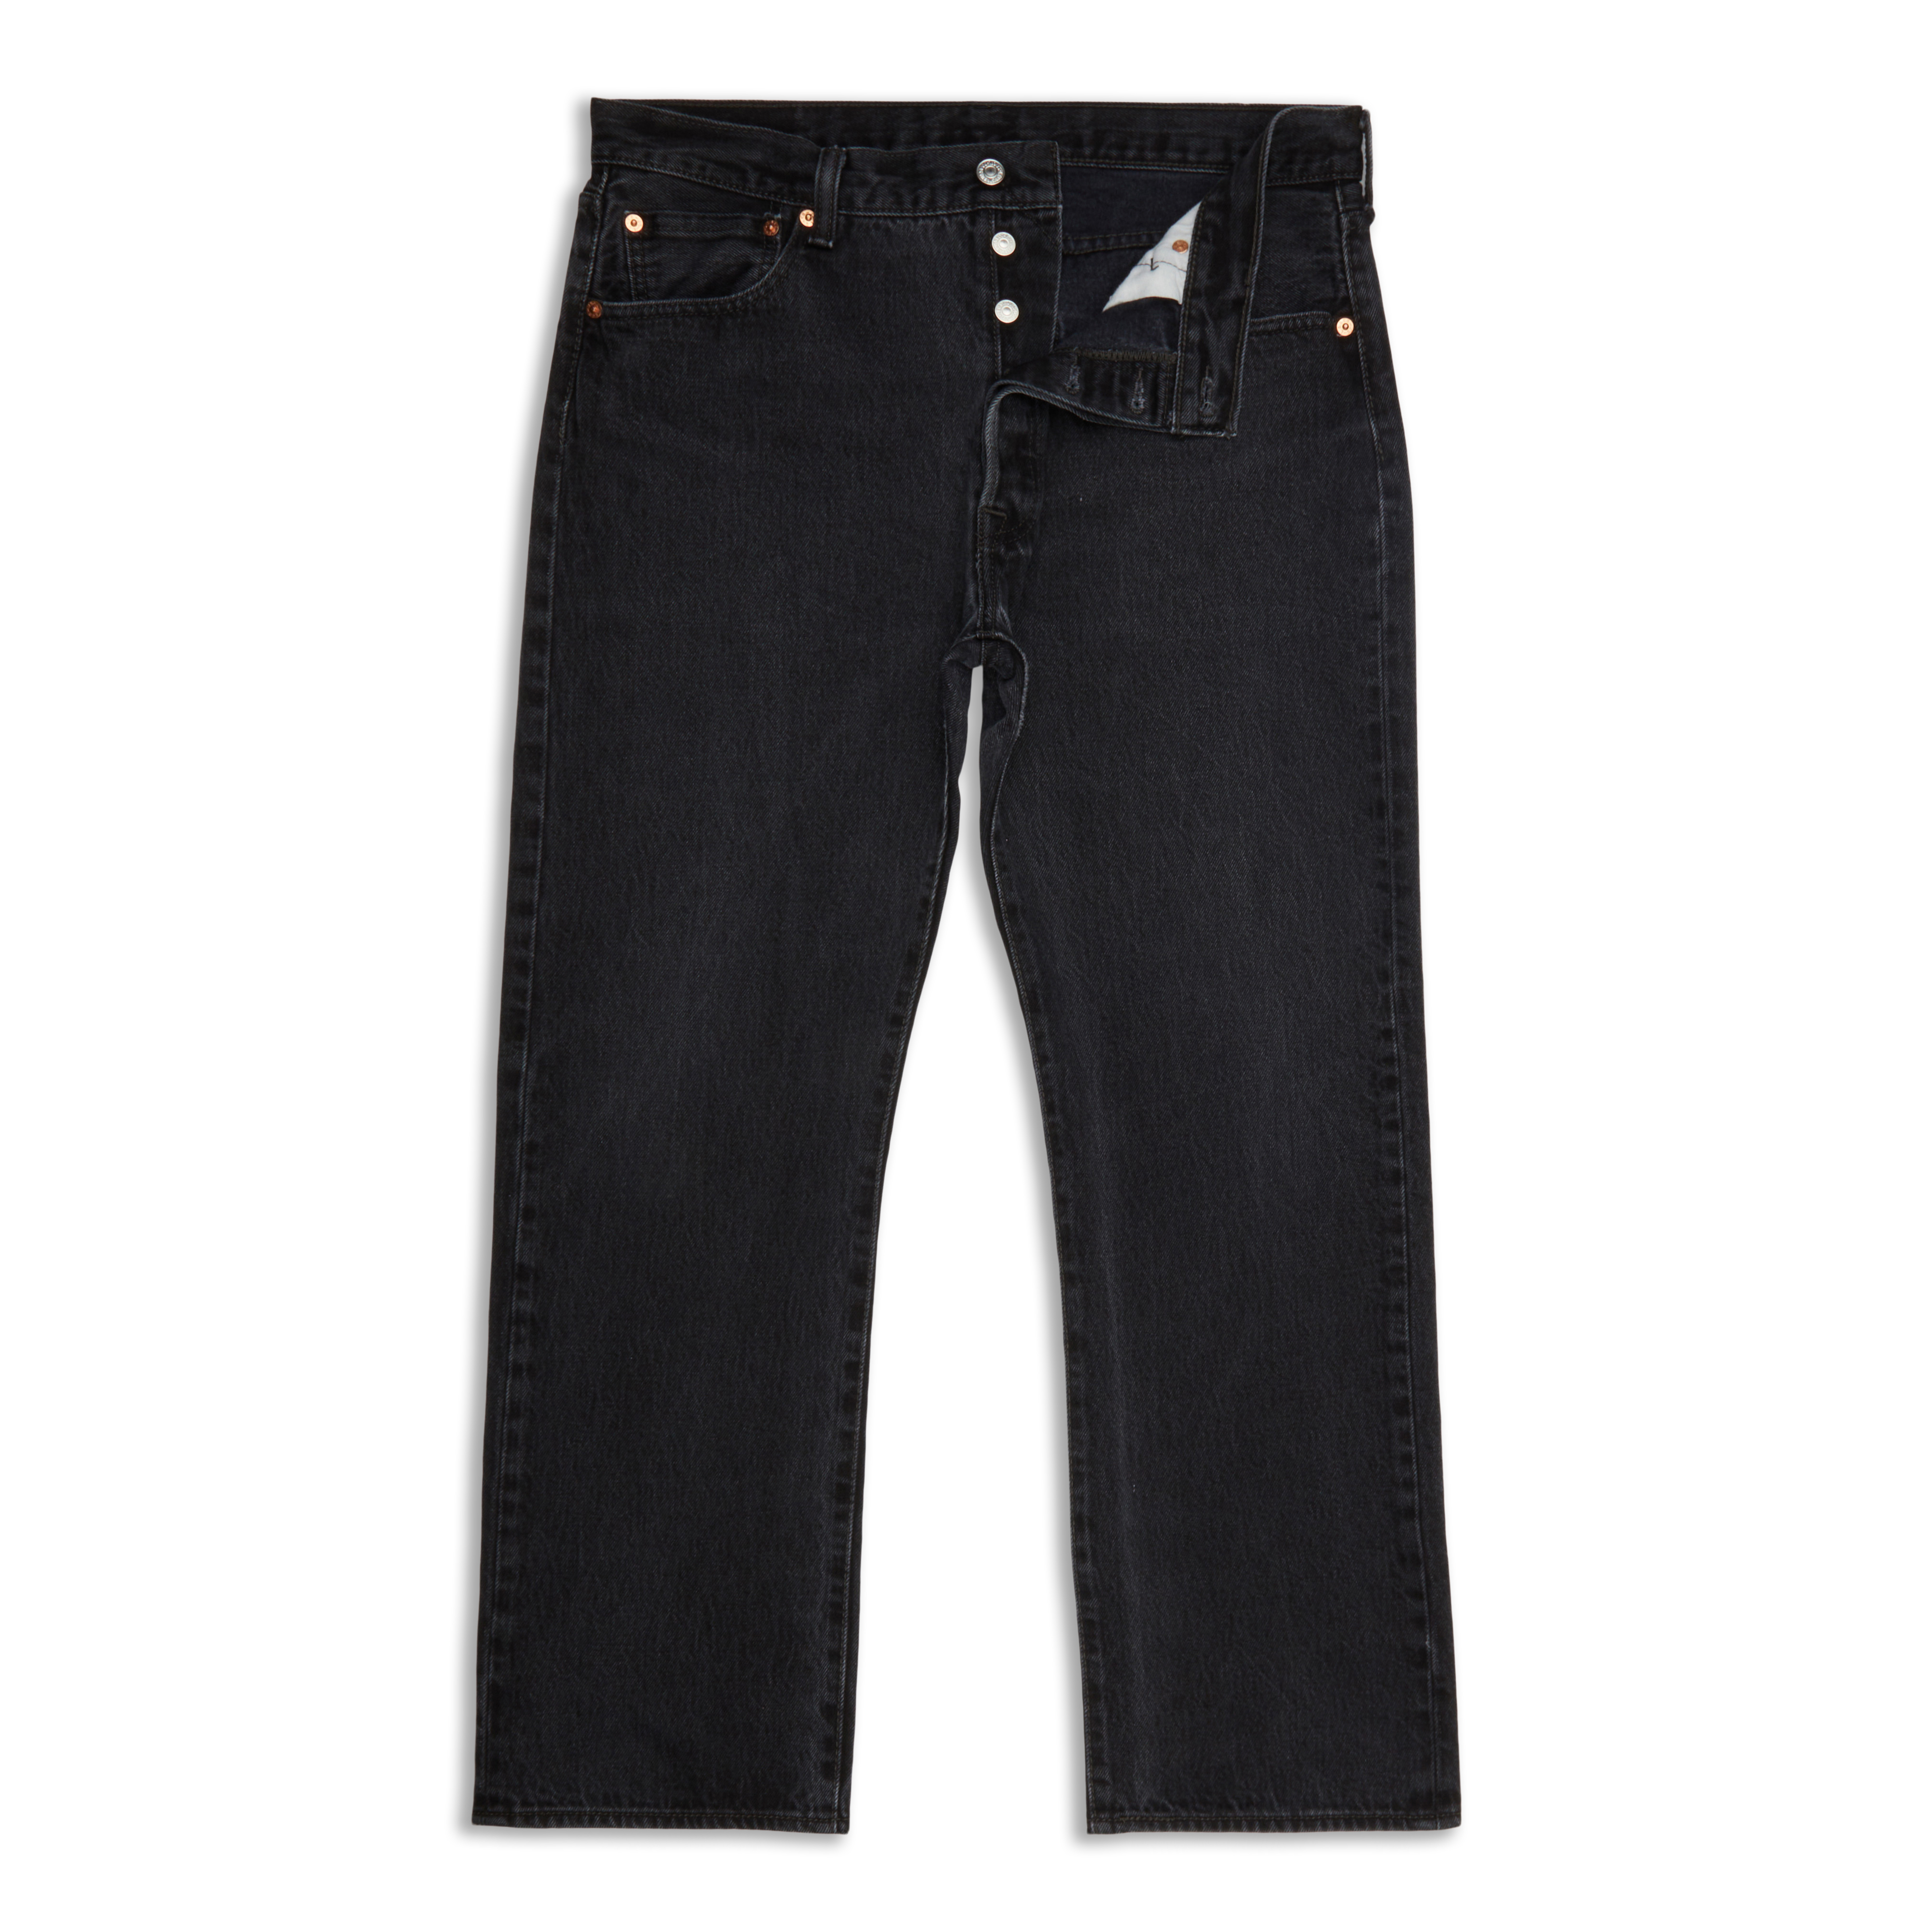 Levis 501® Original Fit Men's Jeans Black